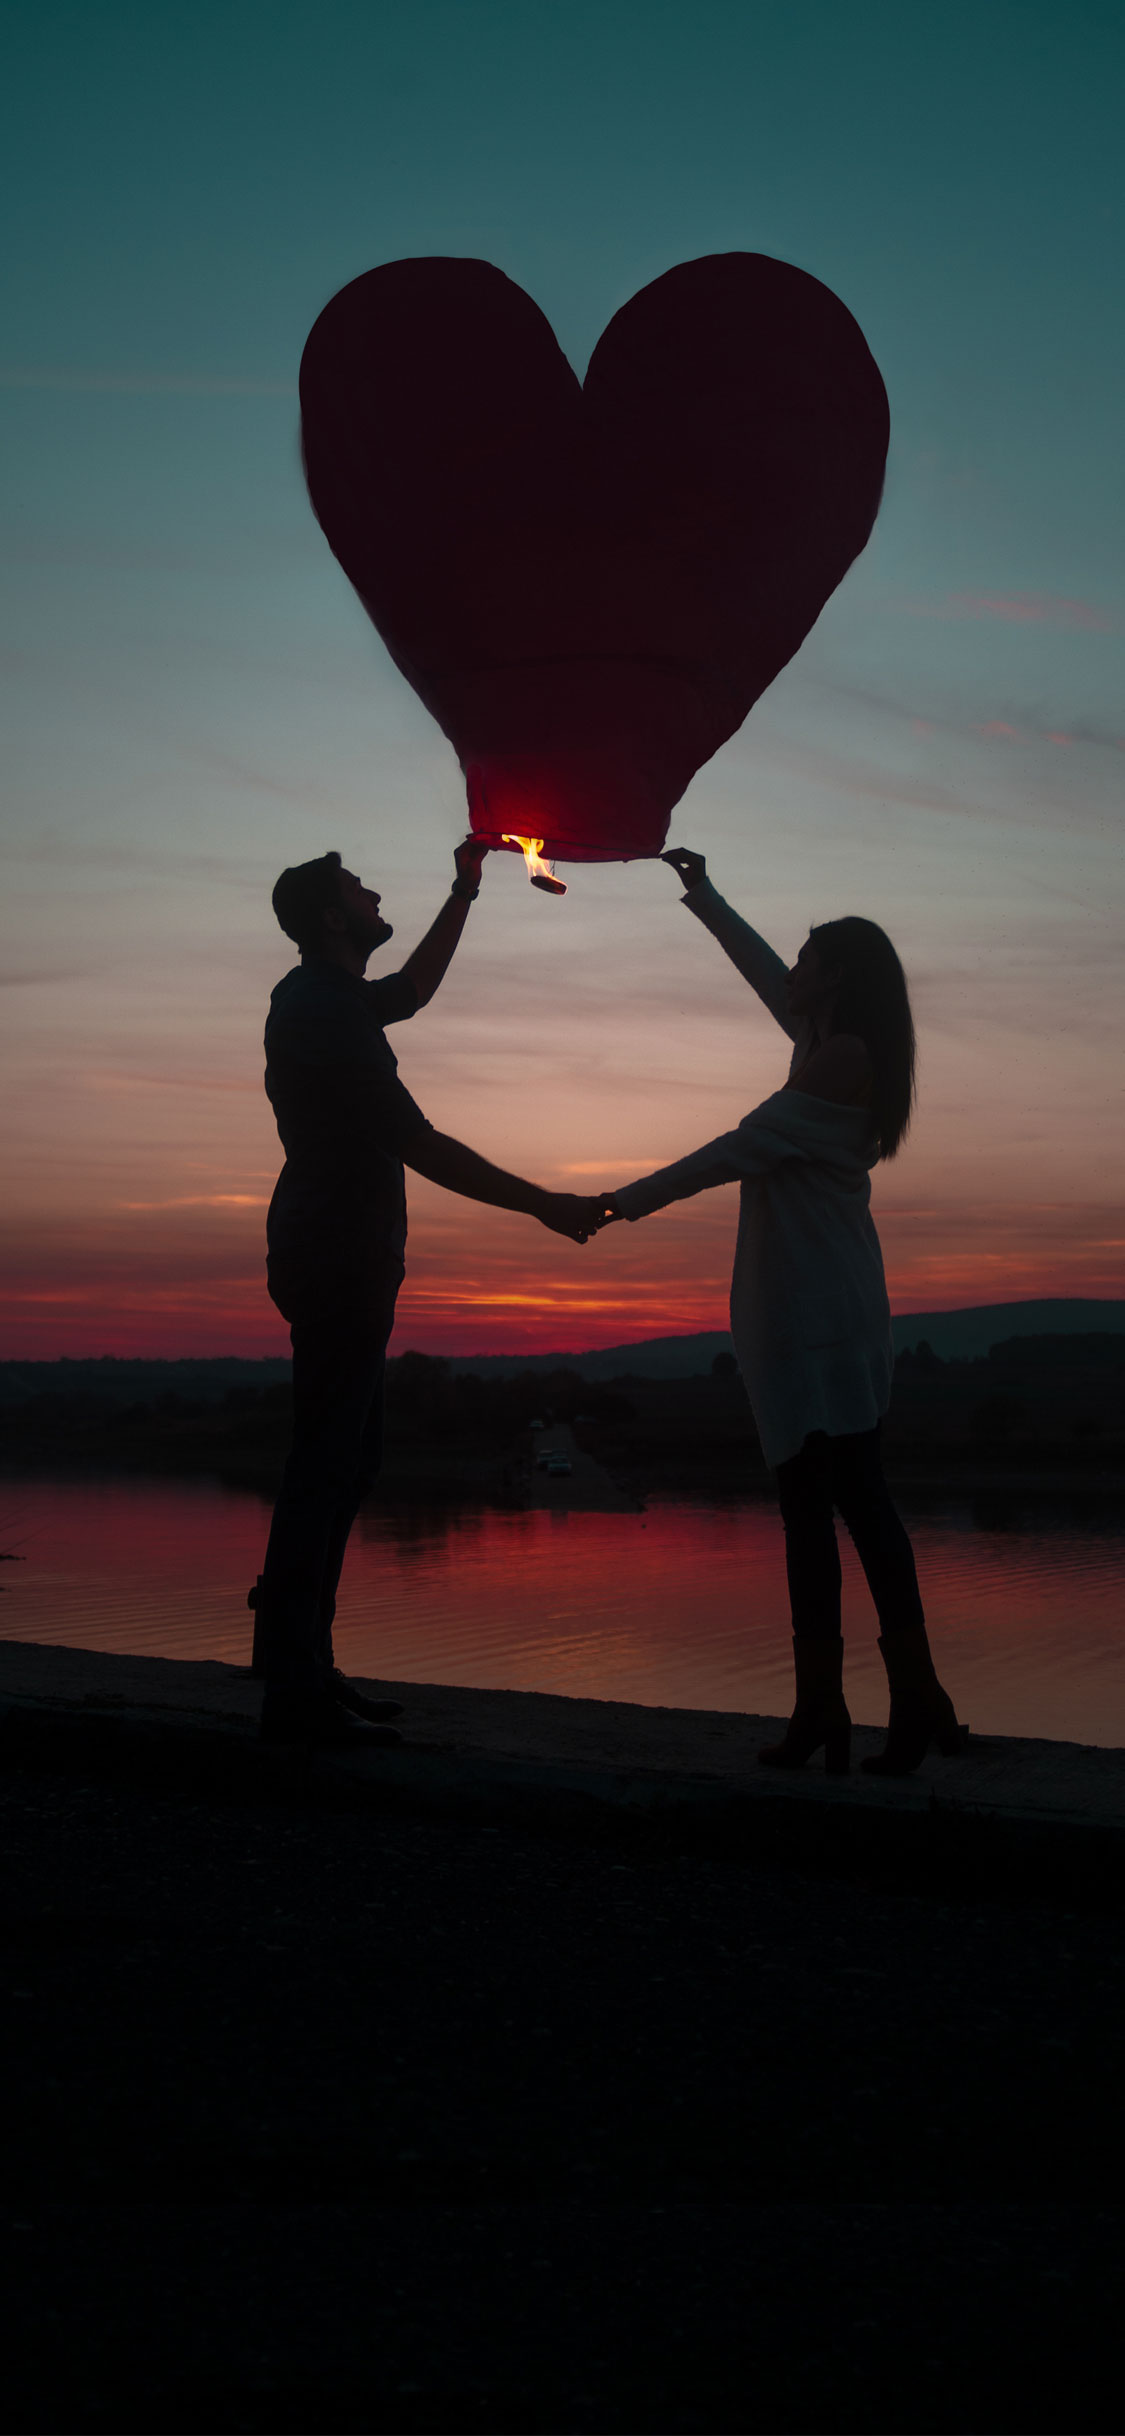 couple fond d'écran iphone,ciel,faire du ballon ascensionnel,montgolfière,ballon,amour